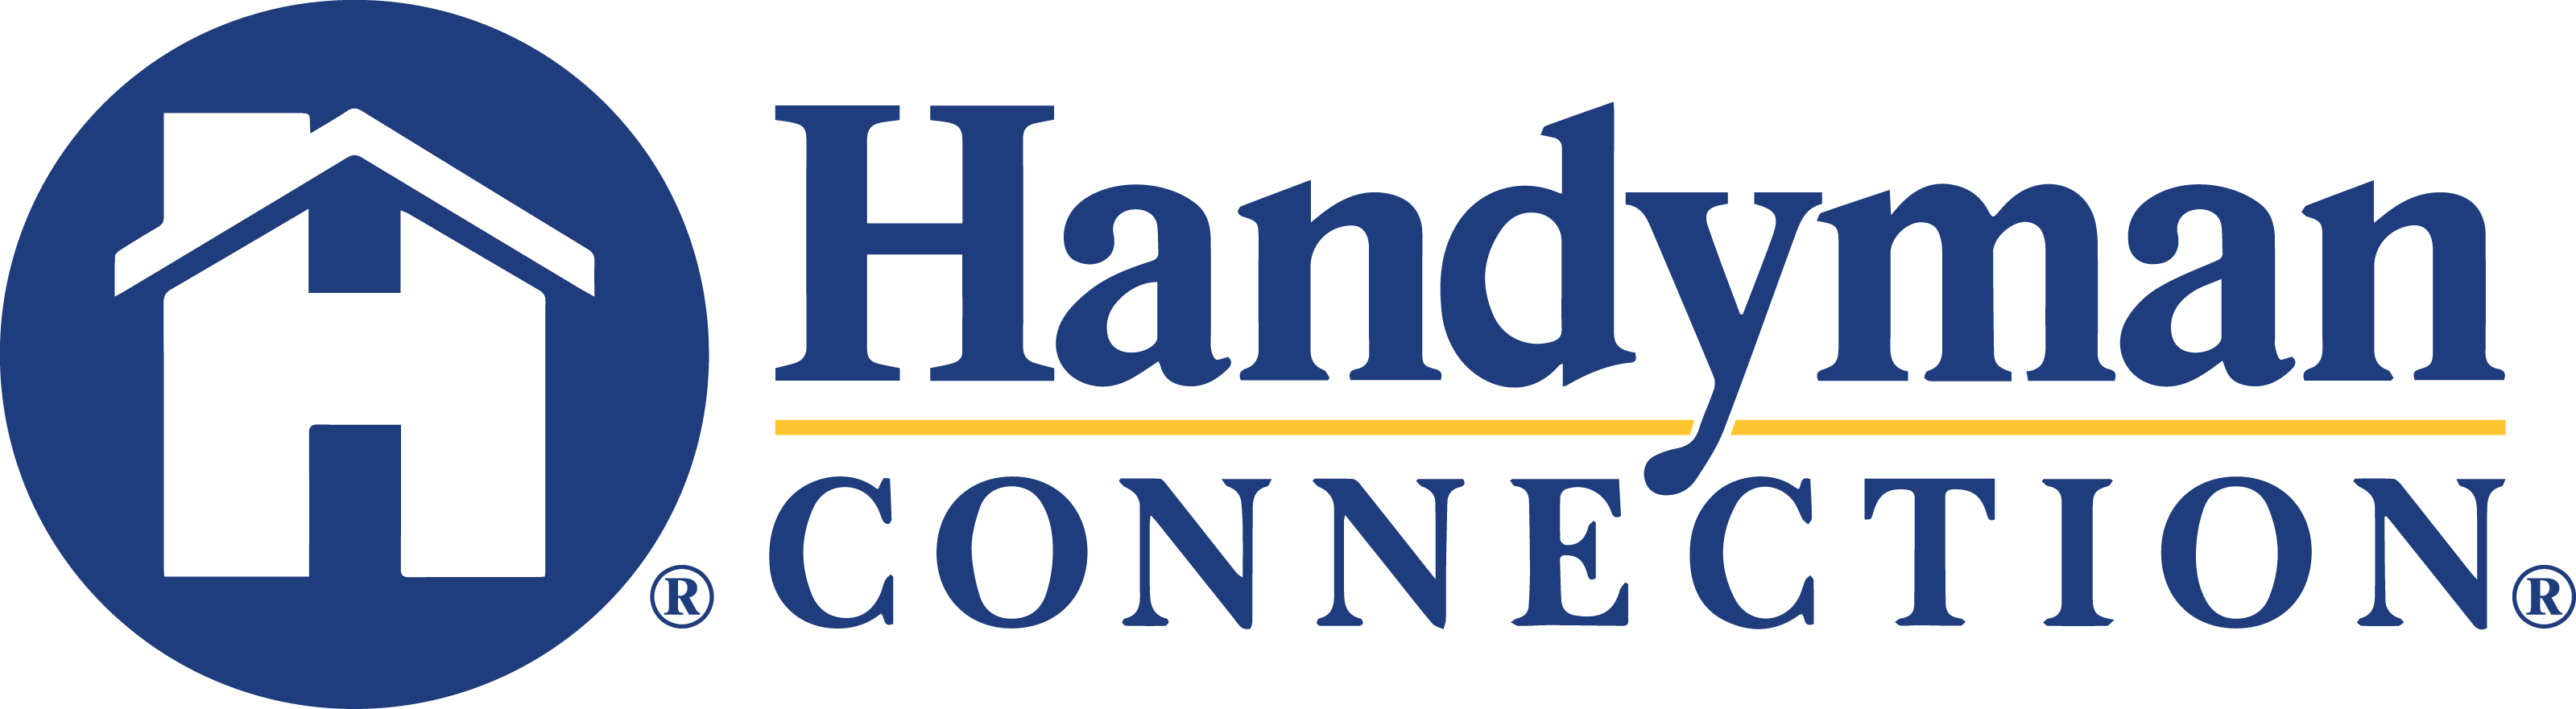 https://handymanconnection.com/south-shore/wp-content/uploads/sites/48/2021/06/HandymanConnection-logo-2.png